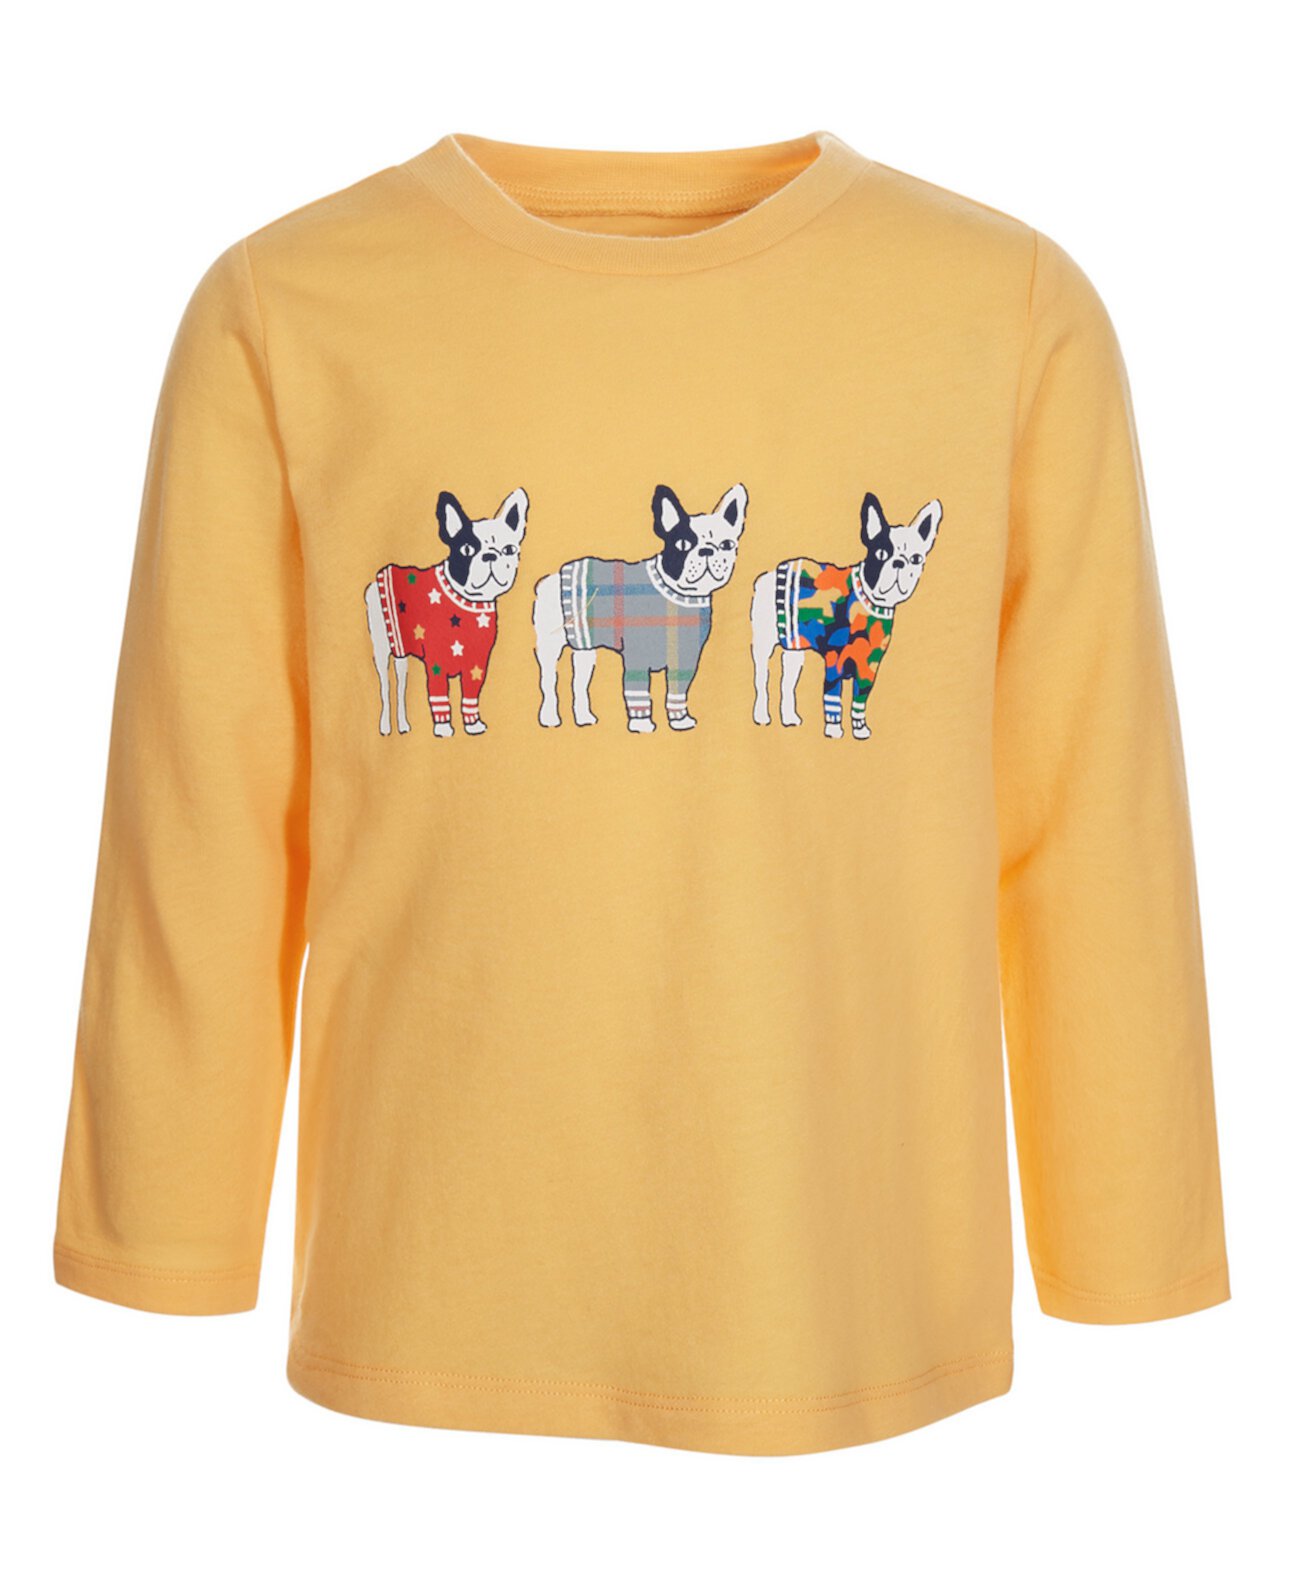 Хлопковая футболка с красивым щенком для маленьких мальчиков, созданная для Macy's First Impressions